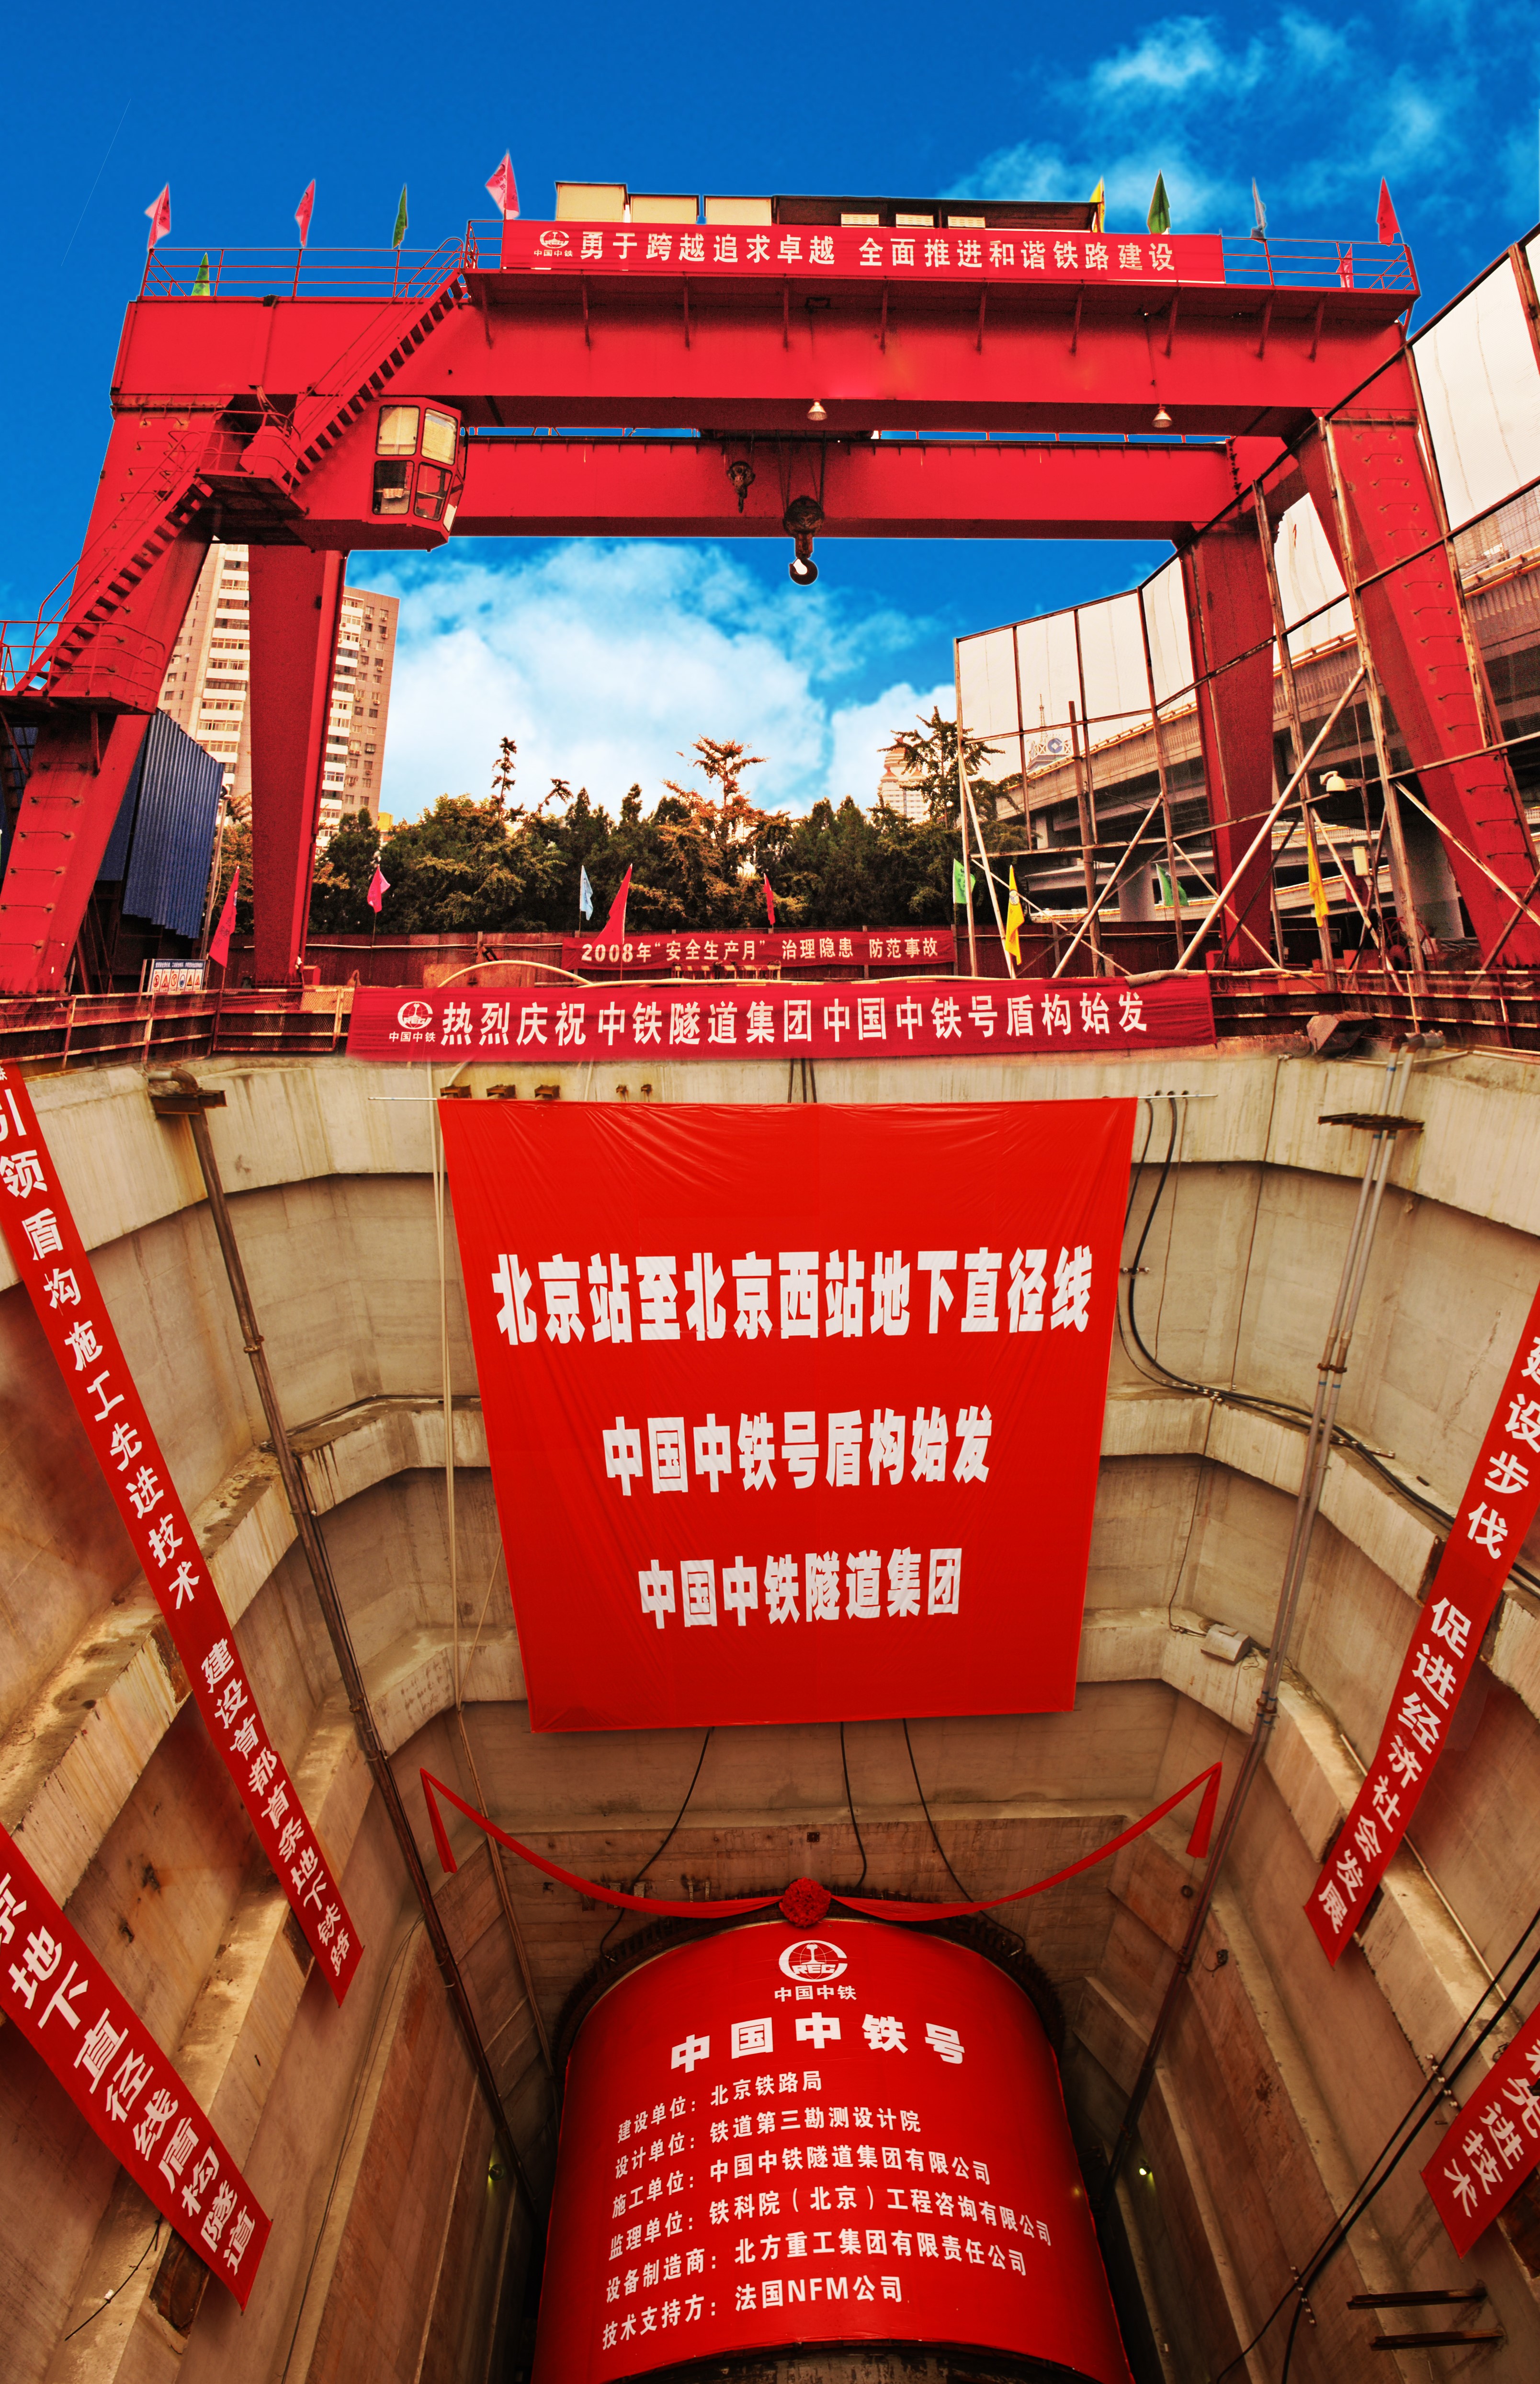 2014年度市政基础设施结构长城杯金质奖工程—北京铁路地下直径线1